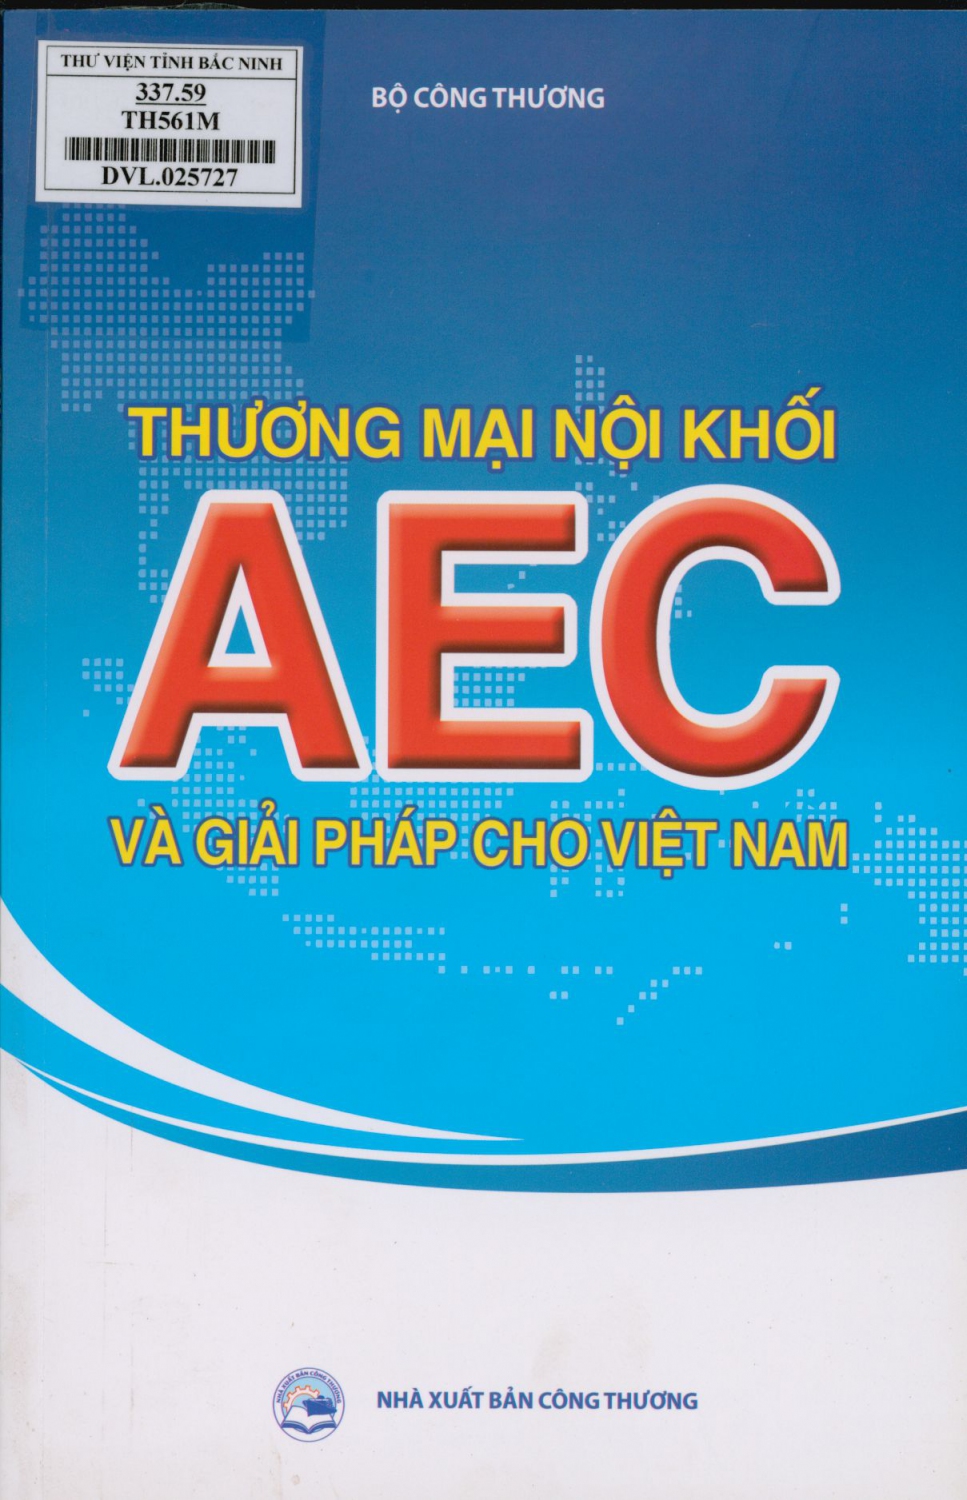 Thương mại nội khối AEC và giải pháp cho Việt Nam